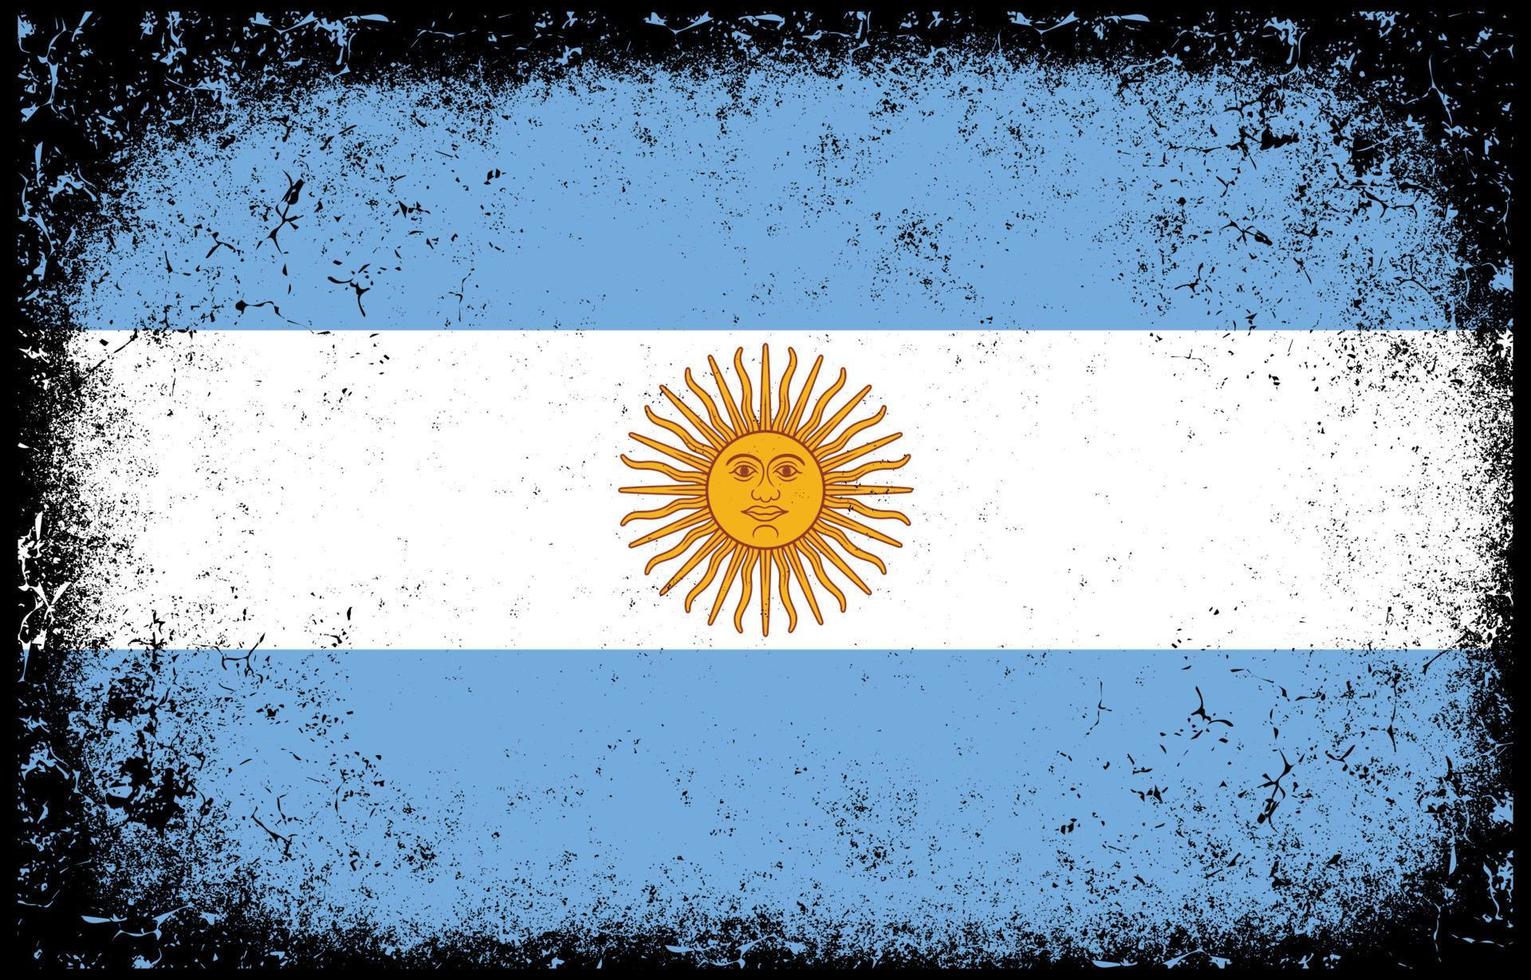 vieux sale grunge vintage argentine drapeau national illustration vecteur